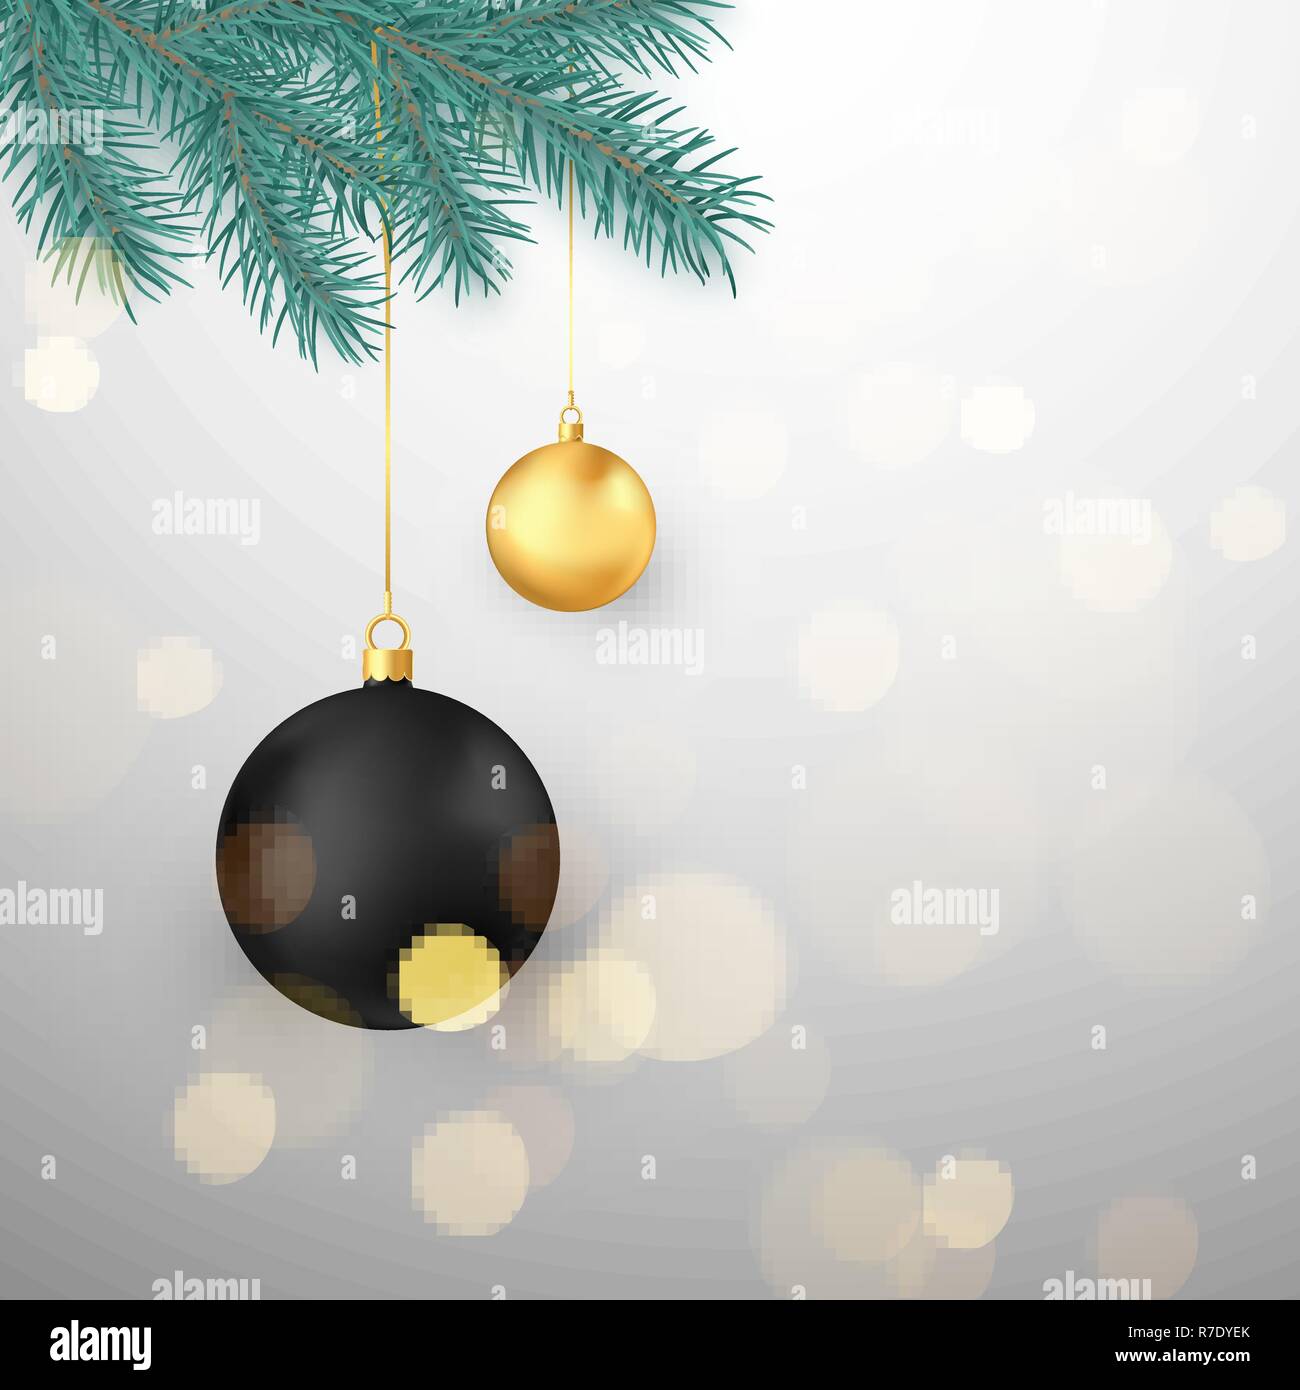 Schwarz und gold Weihnachtskugeln hängen an Tanne Zweig. Winter Urlaub Dekoration Element. Vector Illustration Stock Vektor